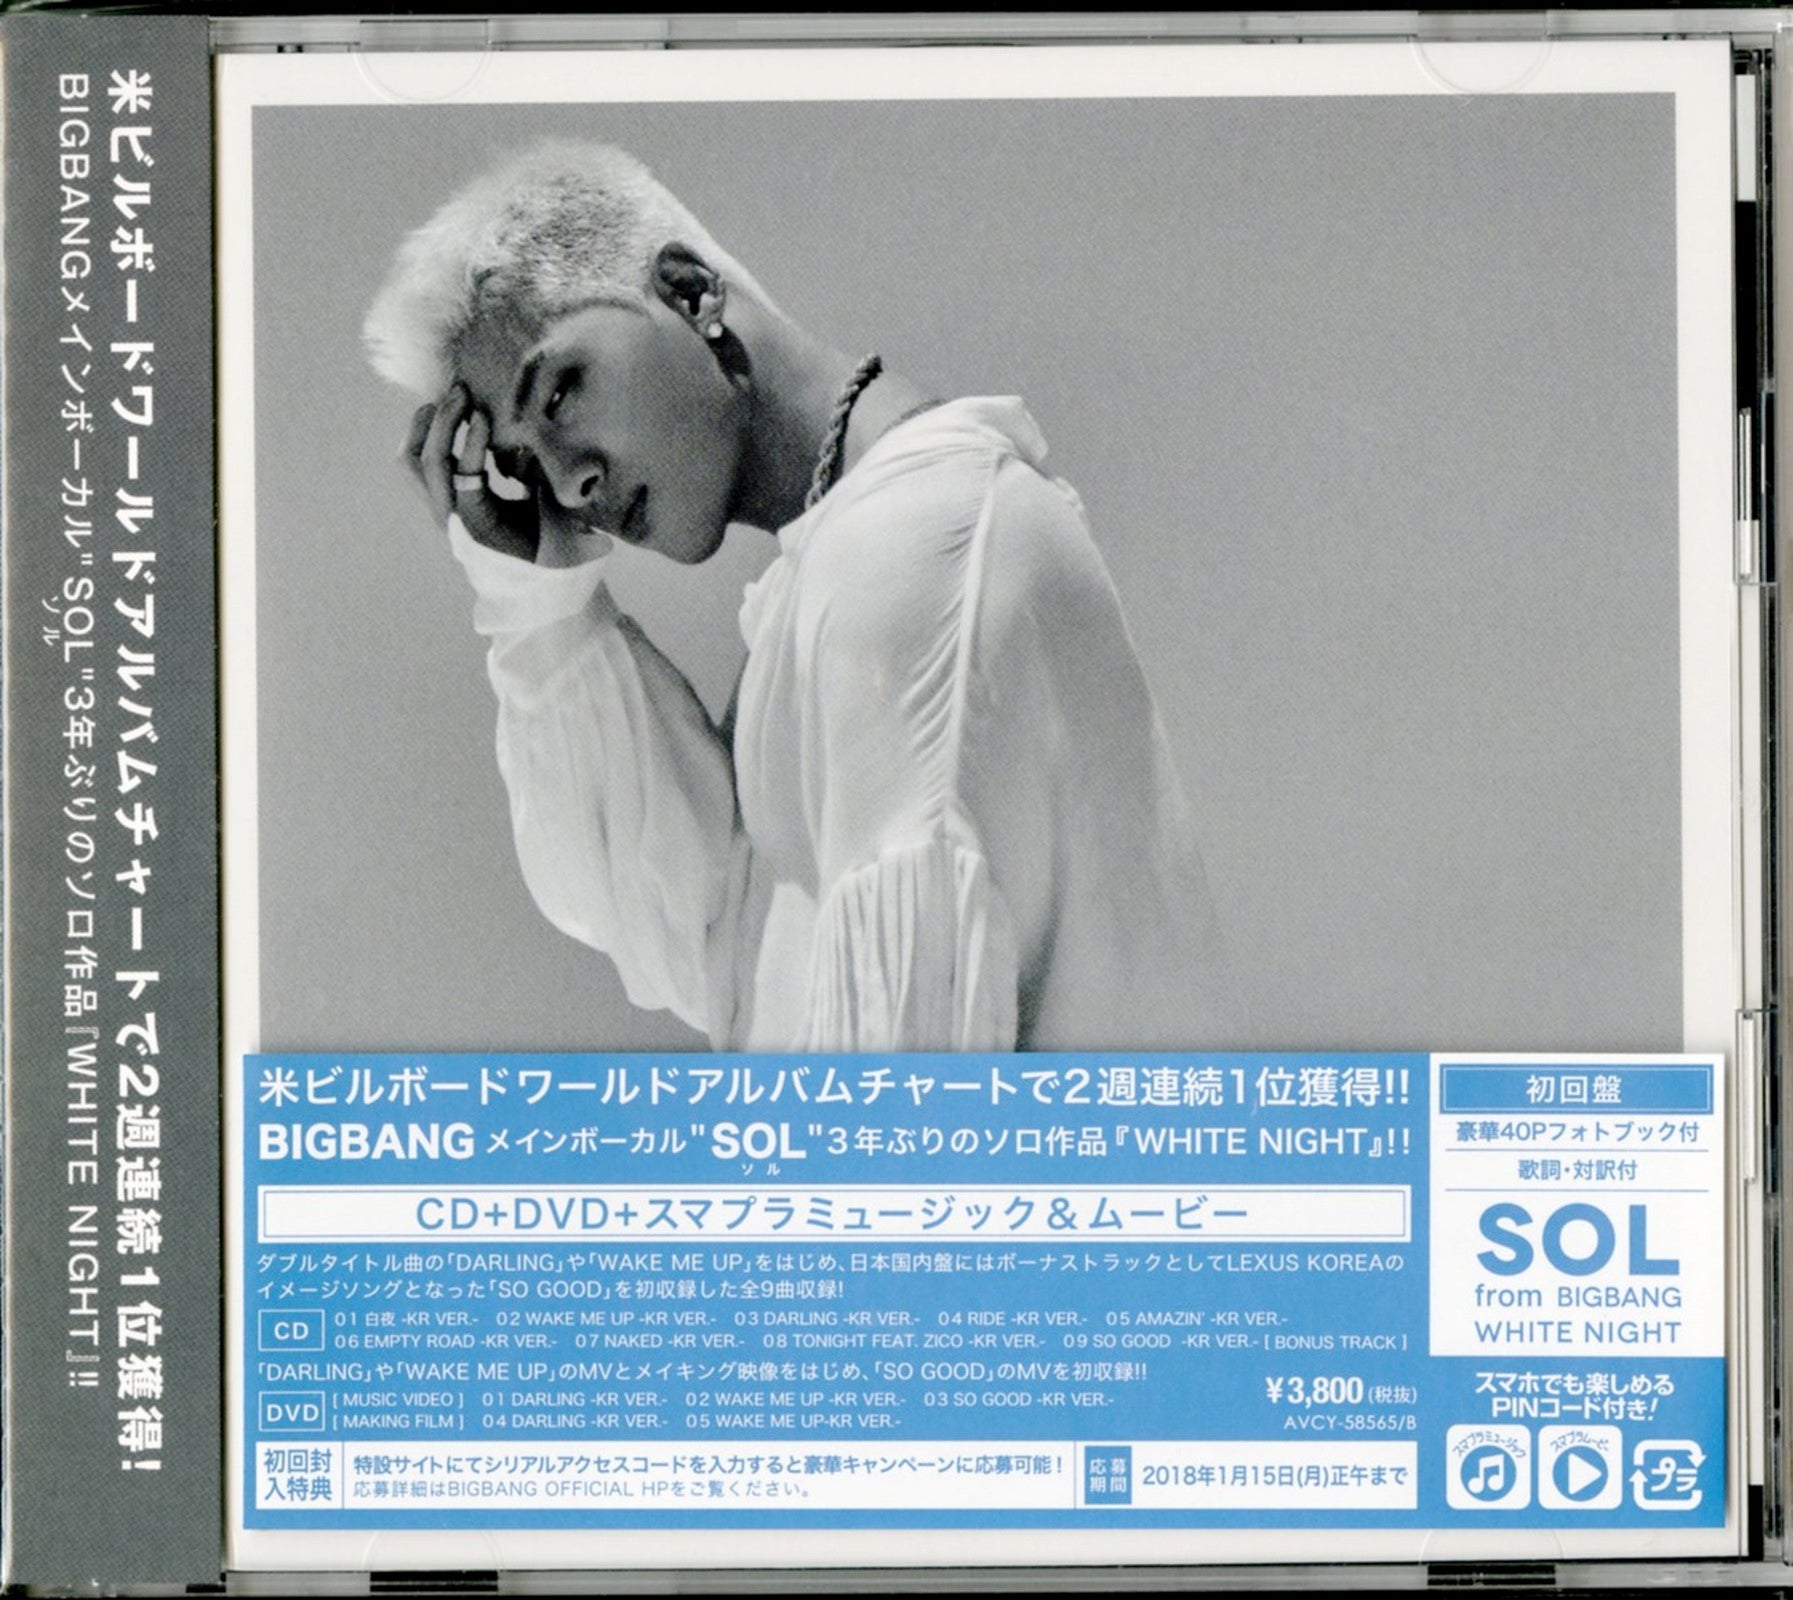 Sol (From Bigbang) - White Night - Japan CD+DVD – CDs Vinyl Japan